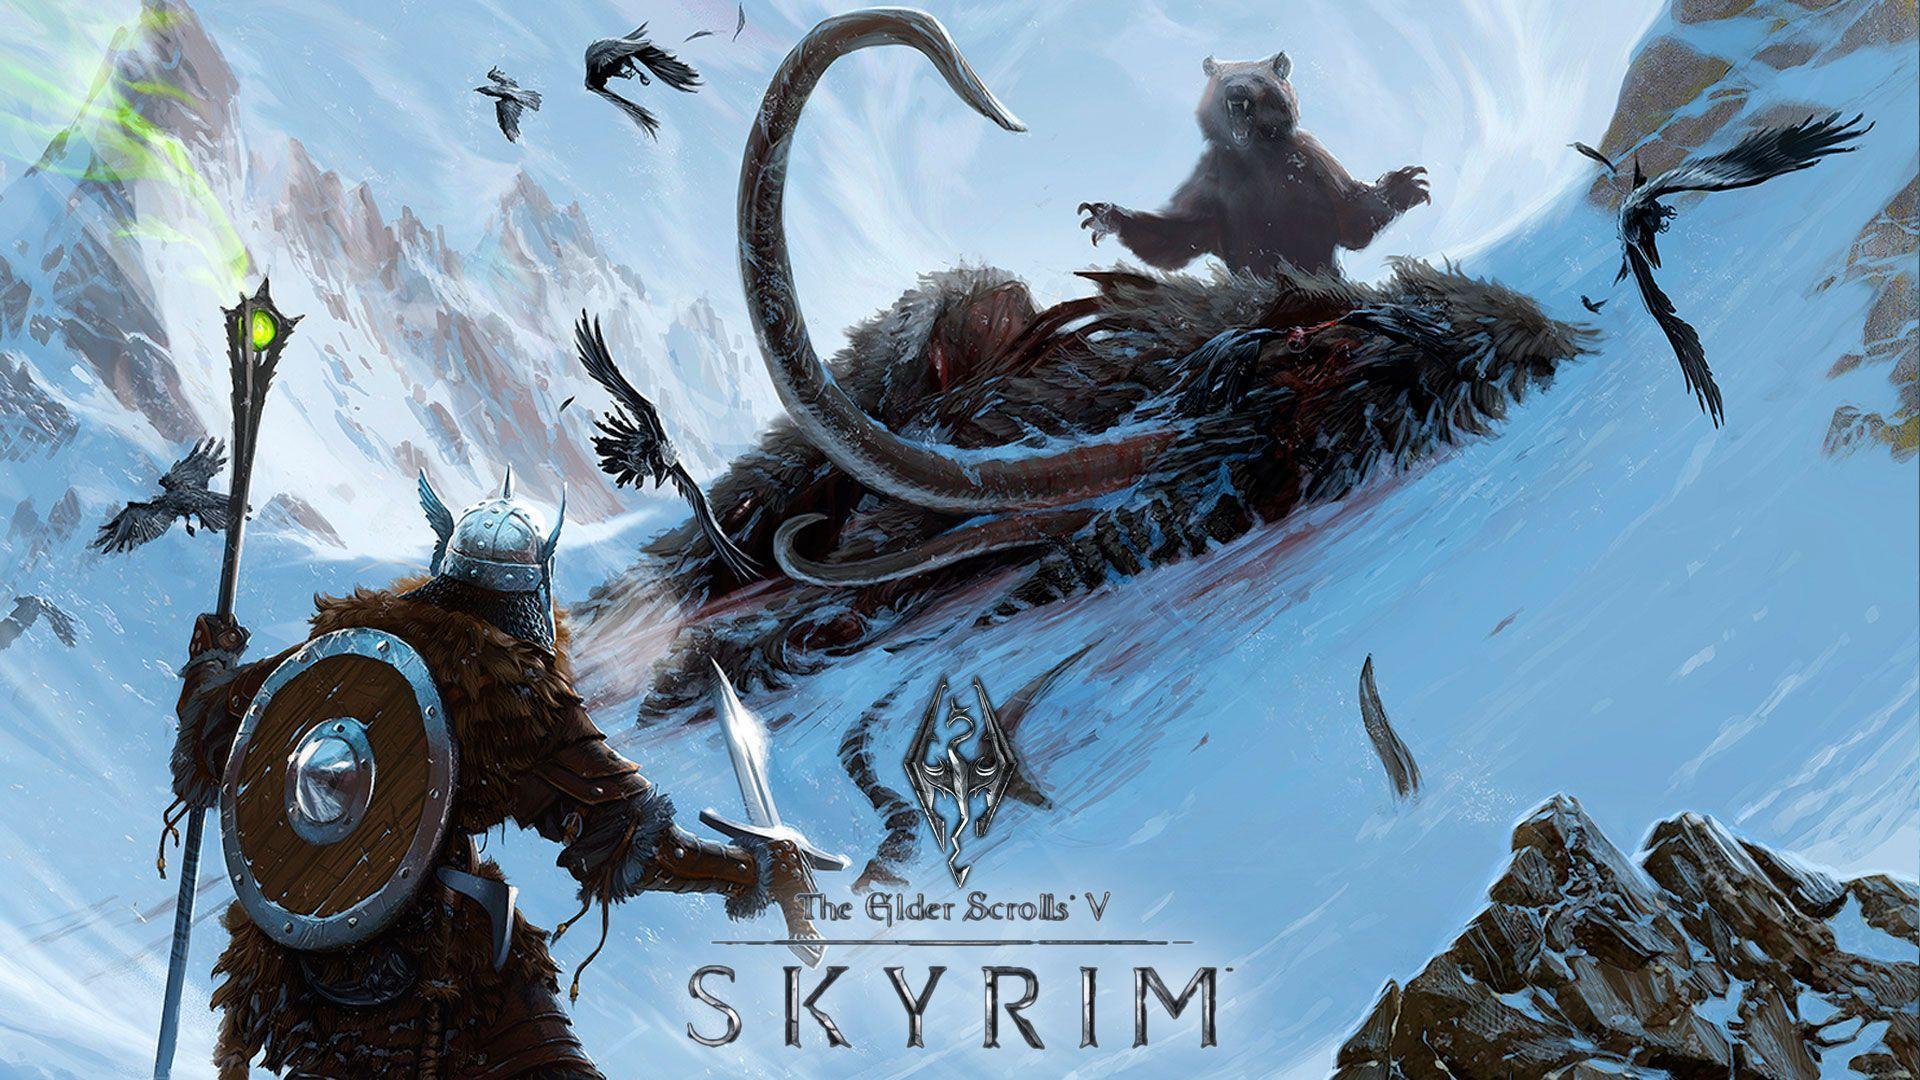 Skyrim Elder Scrolls High Quality Image, HQ Background. HD